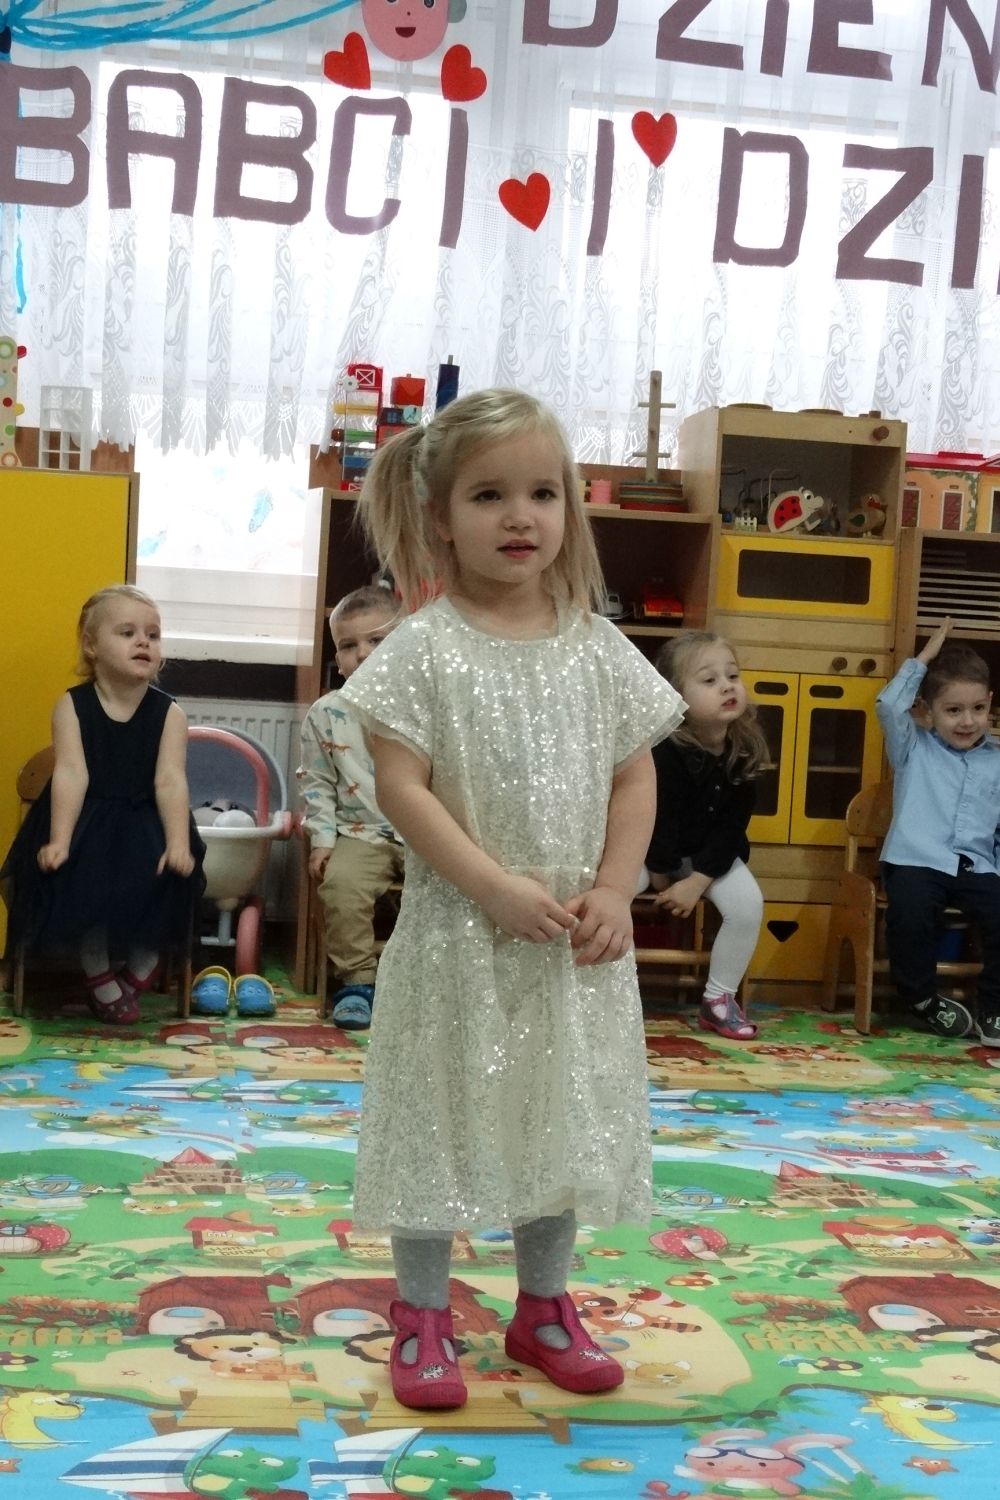 Dziewczynka w białej sukience stoi na środku sali i recytuje wierszyk